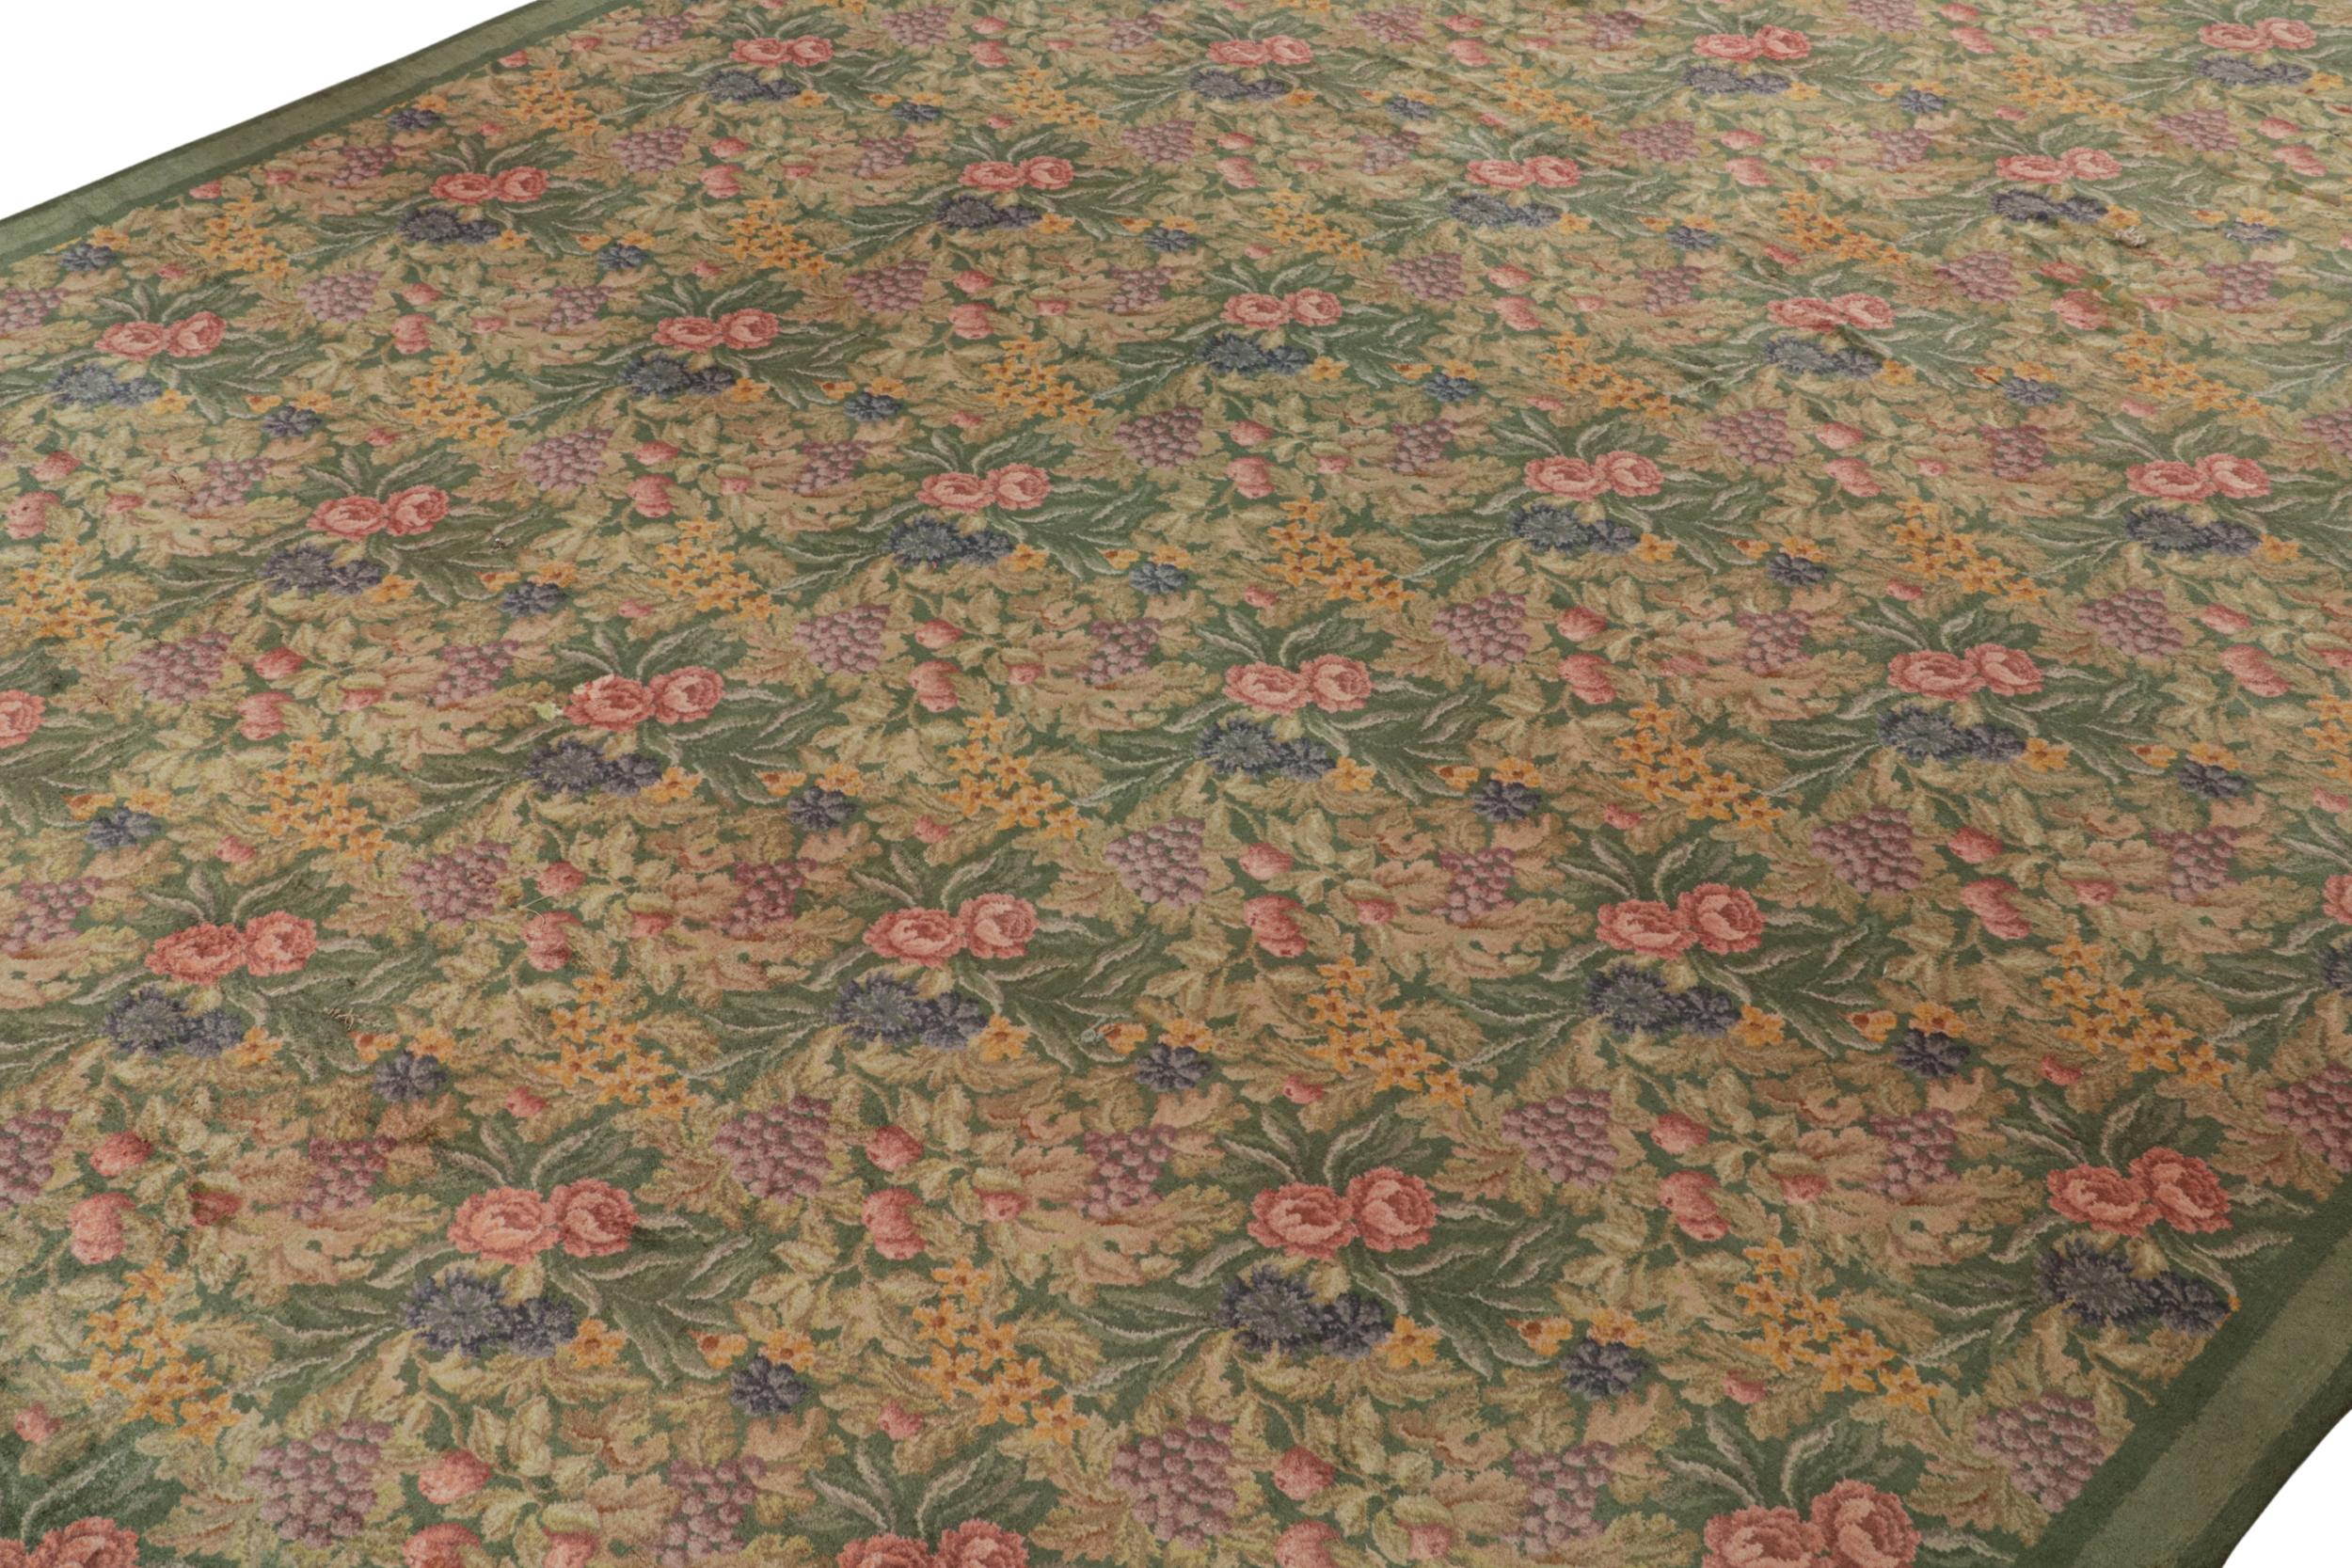 Dieser antike englische Axminster-Teppich im Format 13x17 aus den Jahren 1920-1930 ist ein seltener übergroßer Teppich in diesem europäischen Stil, der von Hand geknüpft wurde.

Über das Design: 

Dieser einzigartige Teppich trägt ein florales